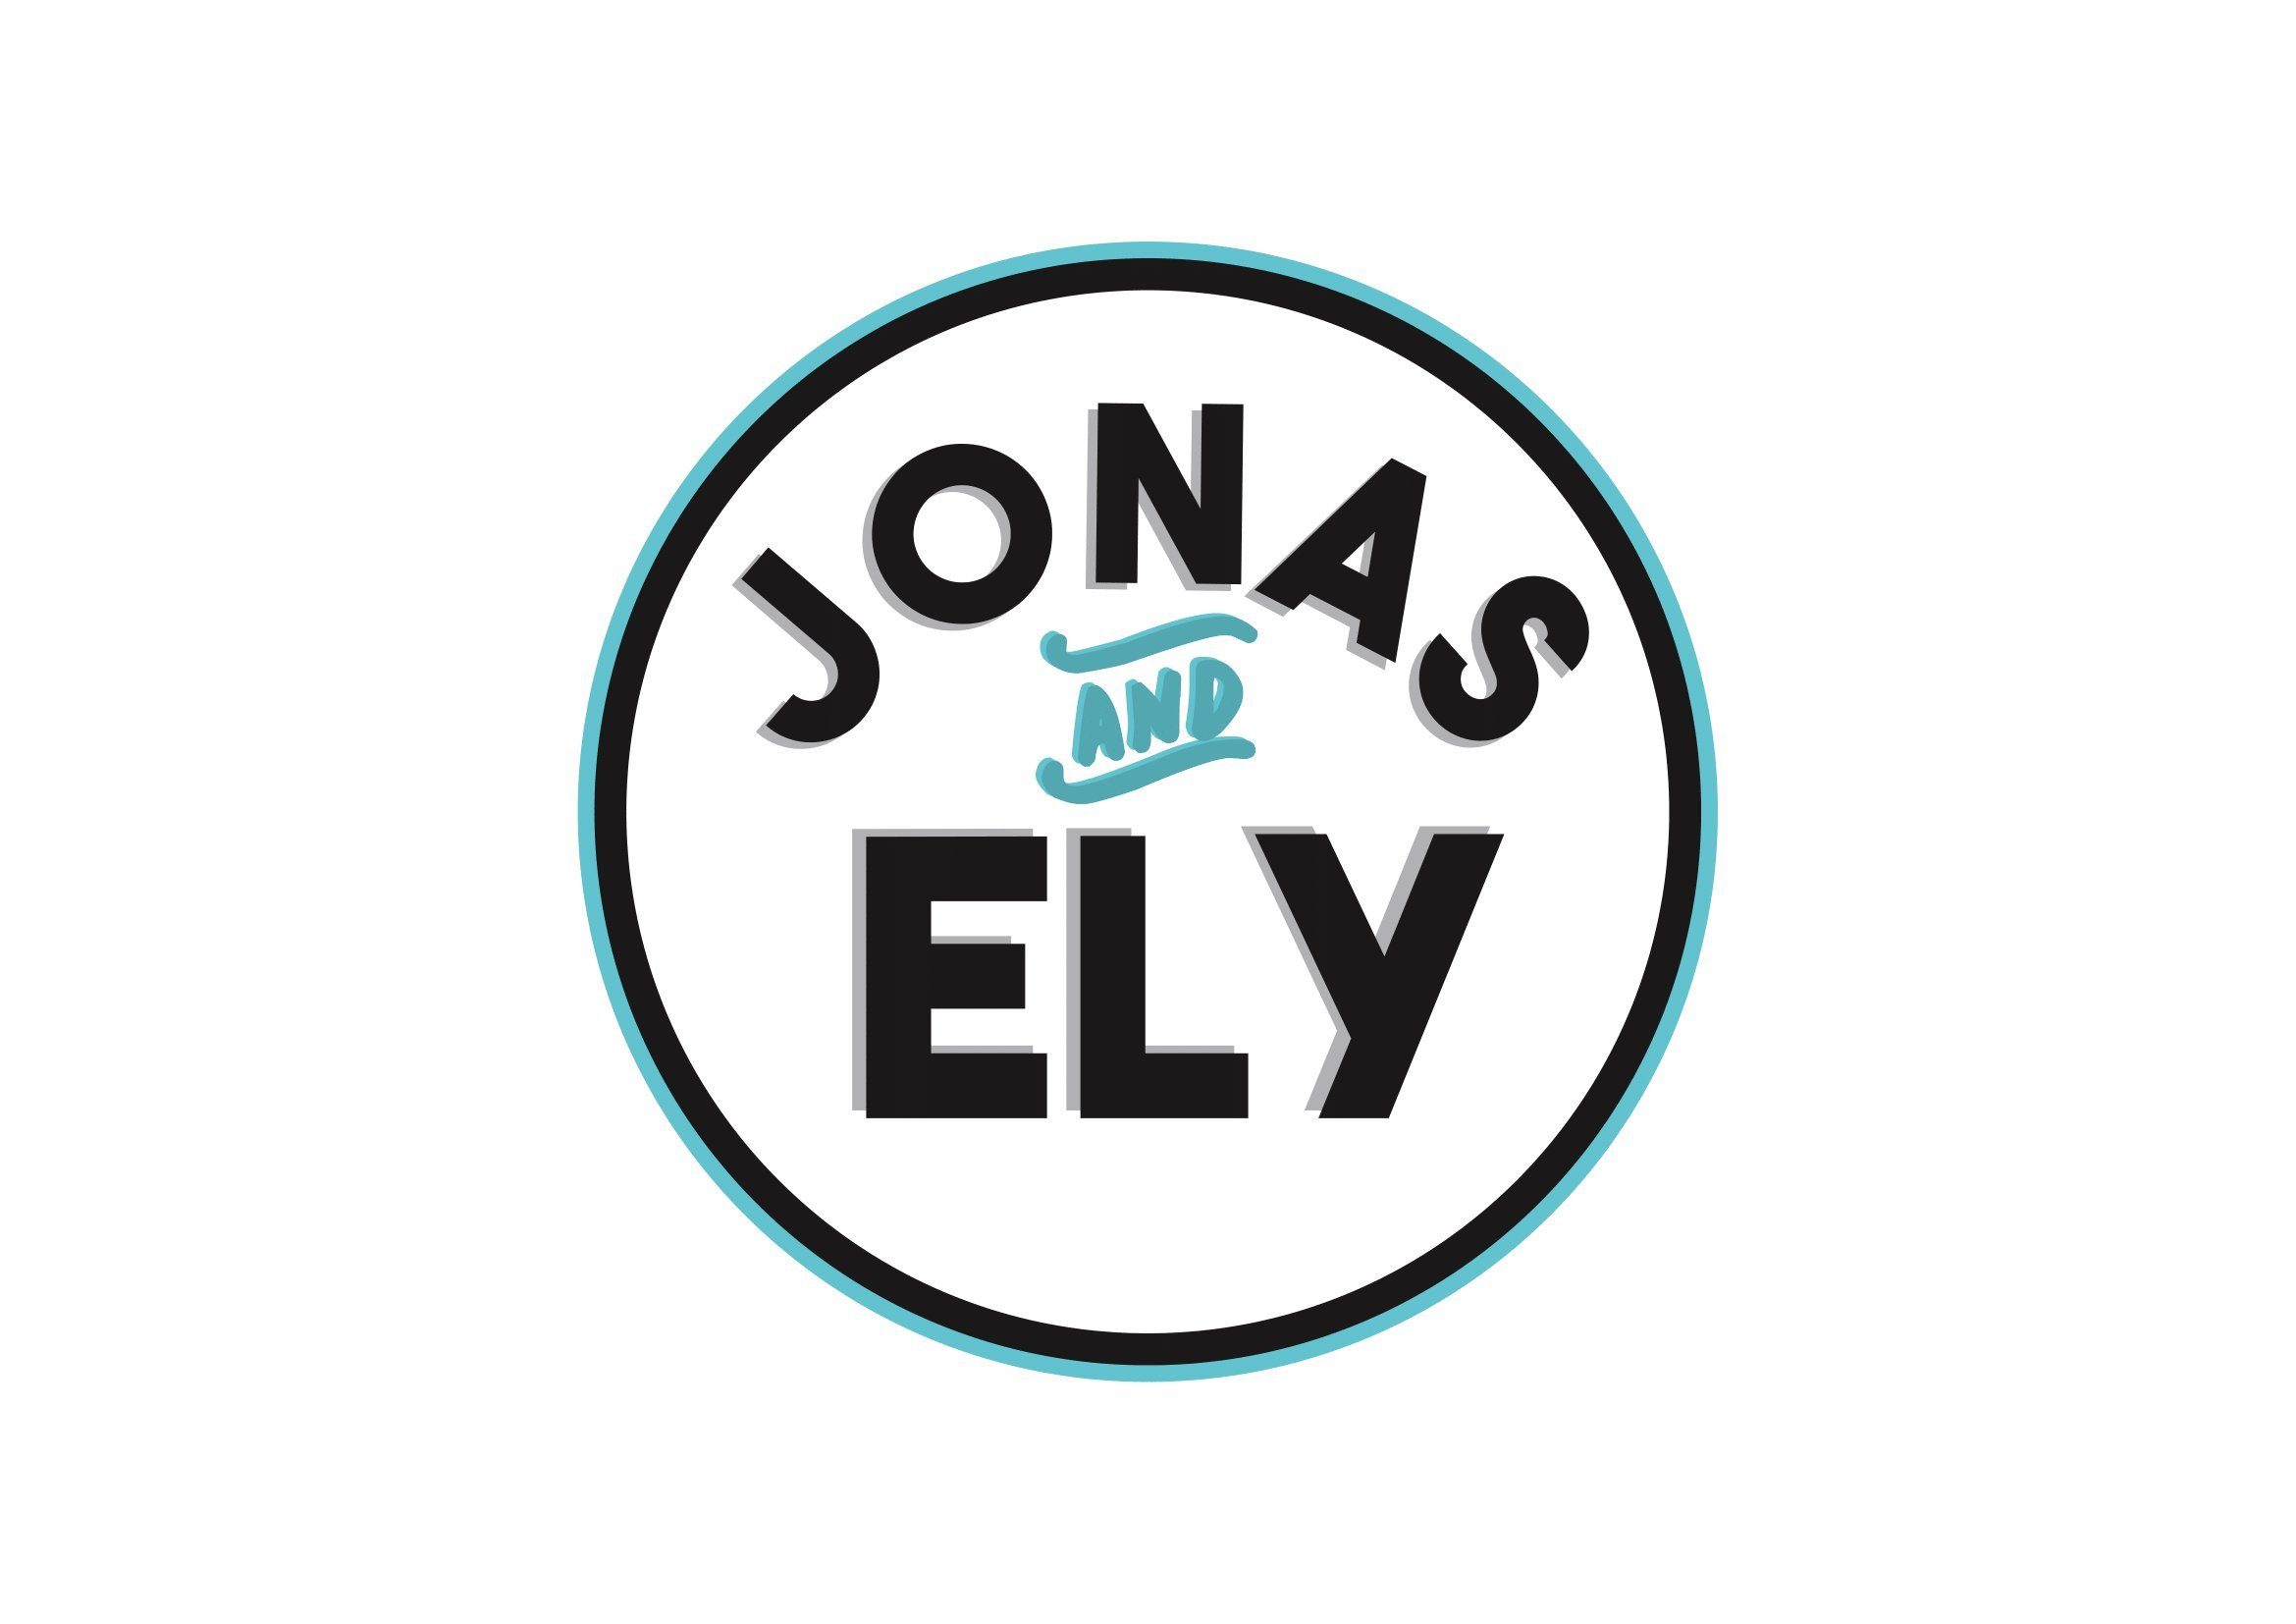 Jonas & Ely